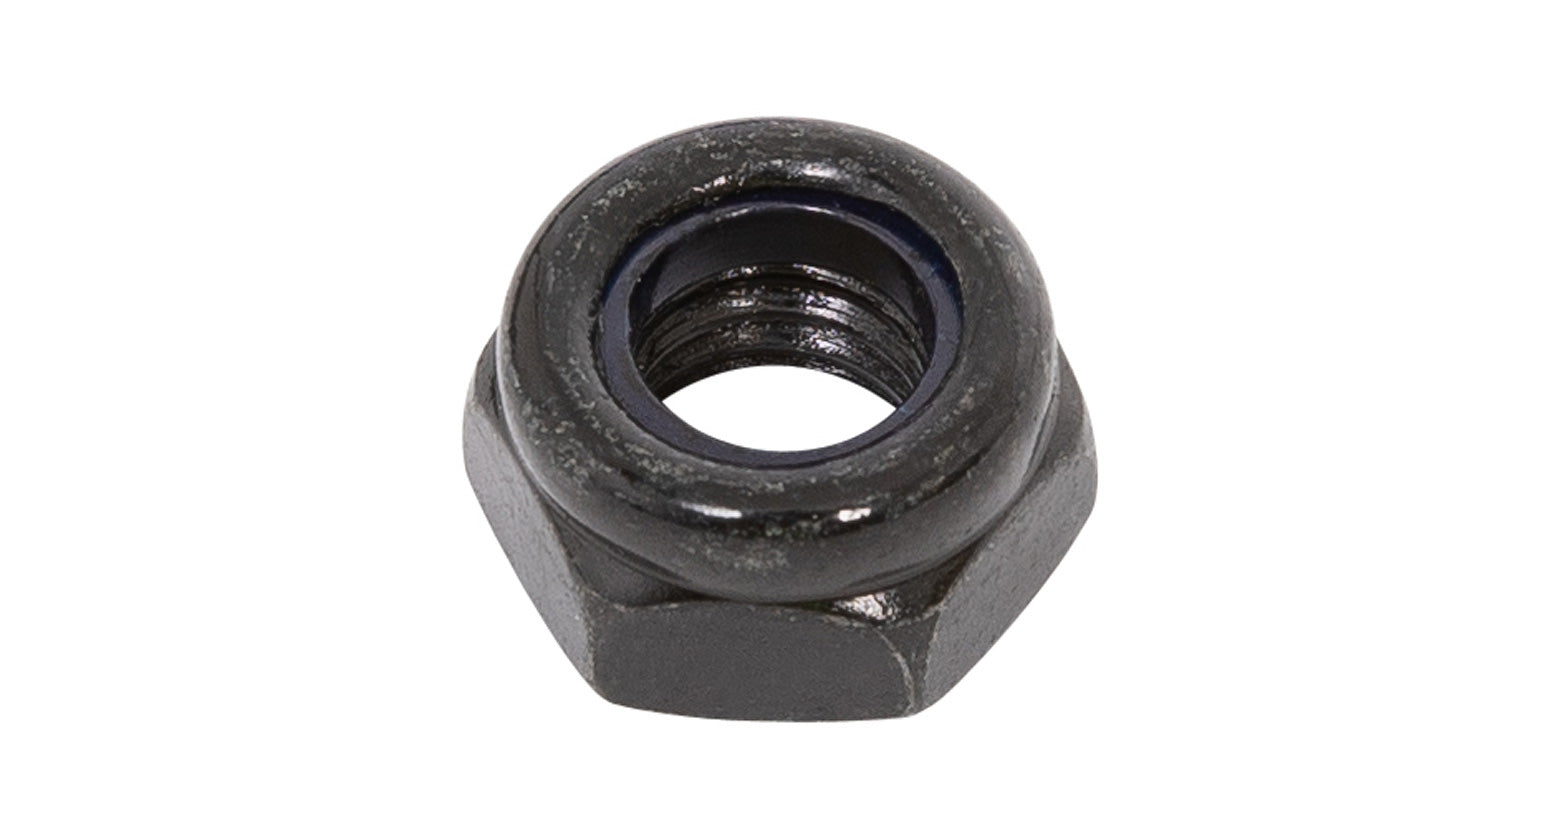 Rhino-Rack N043-BP M8 Black Nyloc Nut (Stainless Steel) (4 Pack)